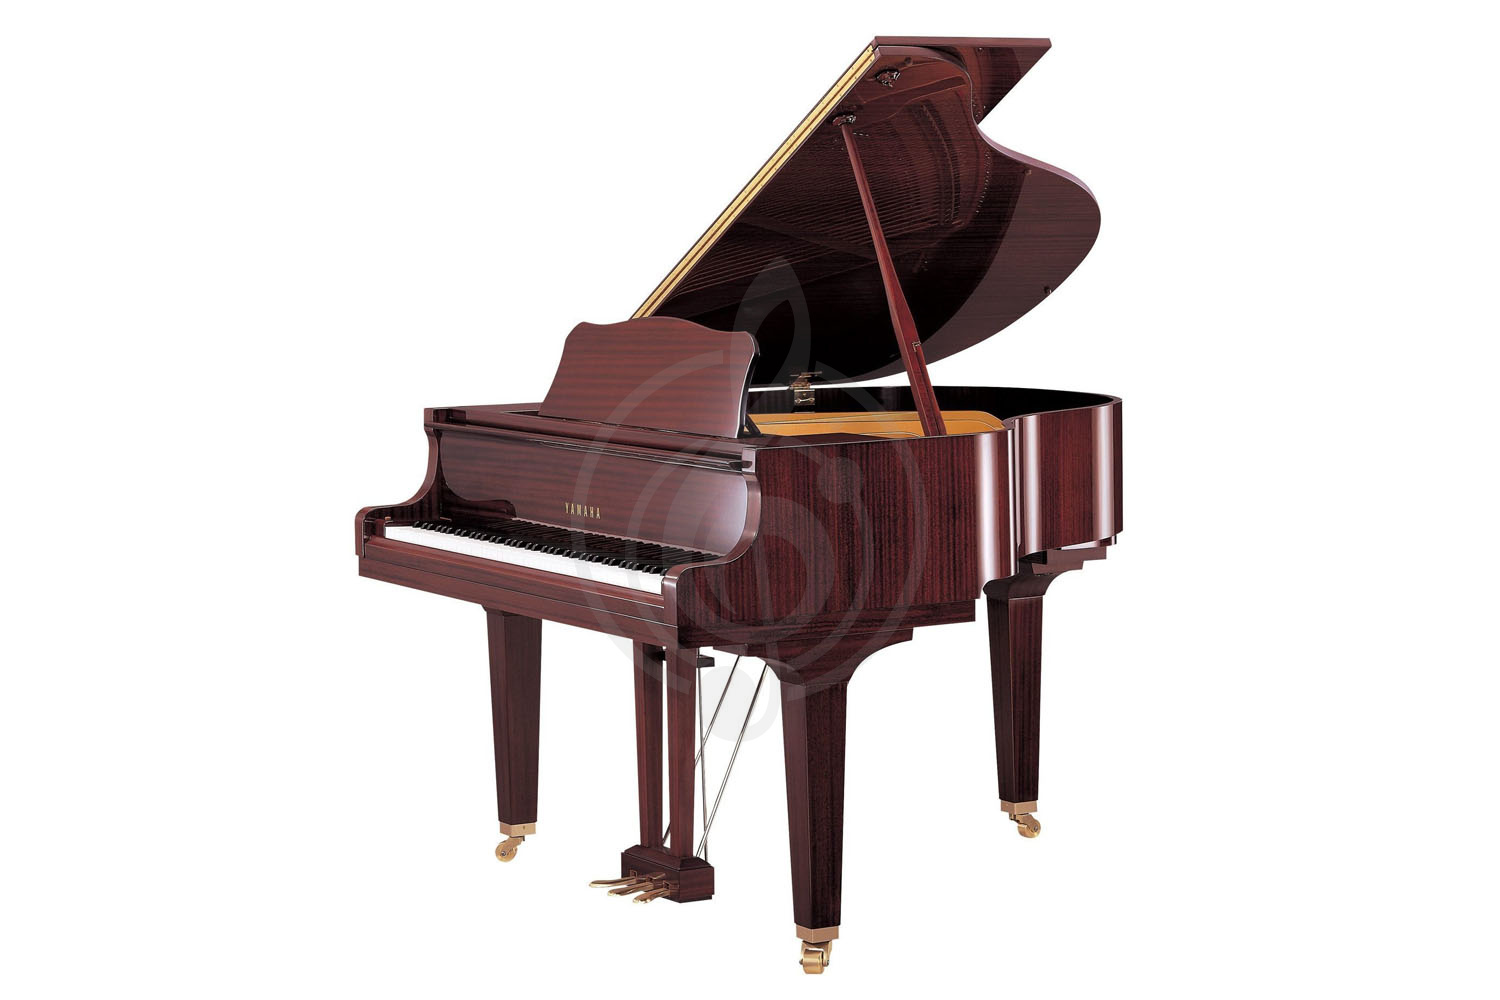 Акустический рояль Акустические рояли Yamaha Yamaha GB1K PM - акустический рояль GB1KPM//LZ.WITHBENCH - фото 1